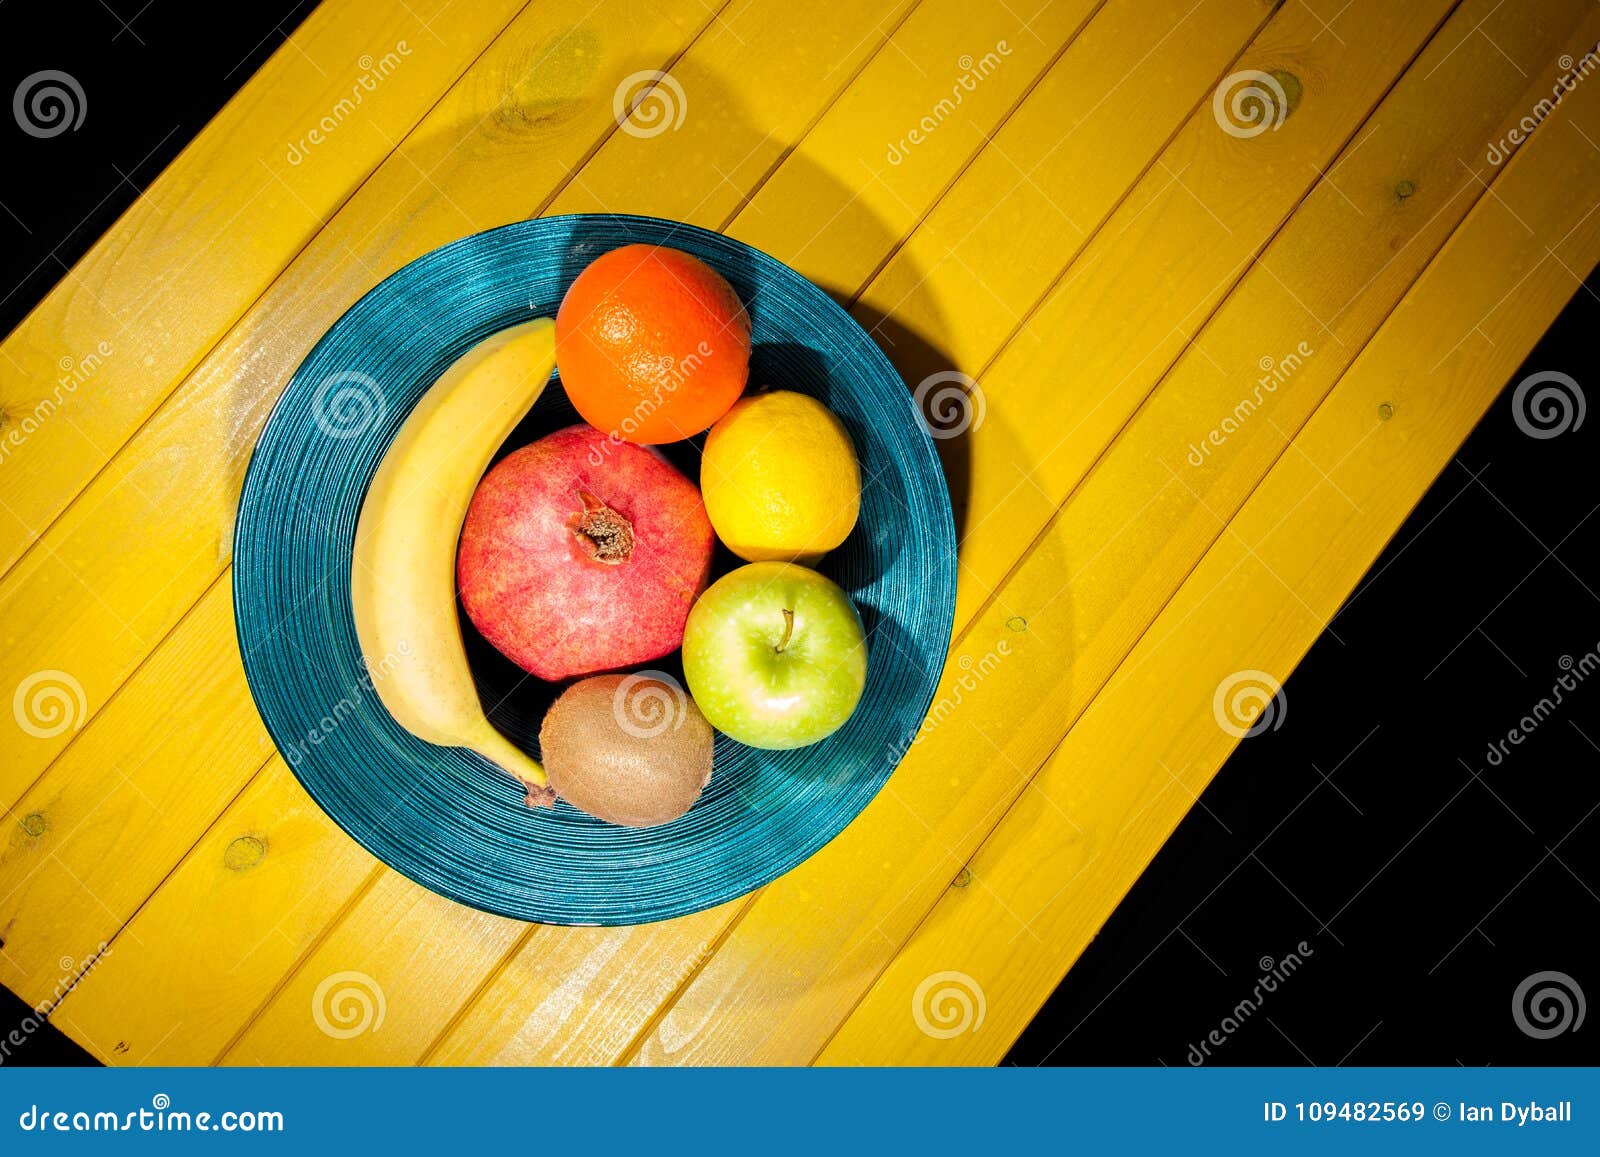 modernistic fruit bowl still life. healthy vegan food including